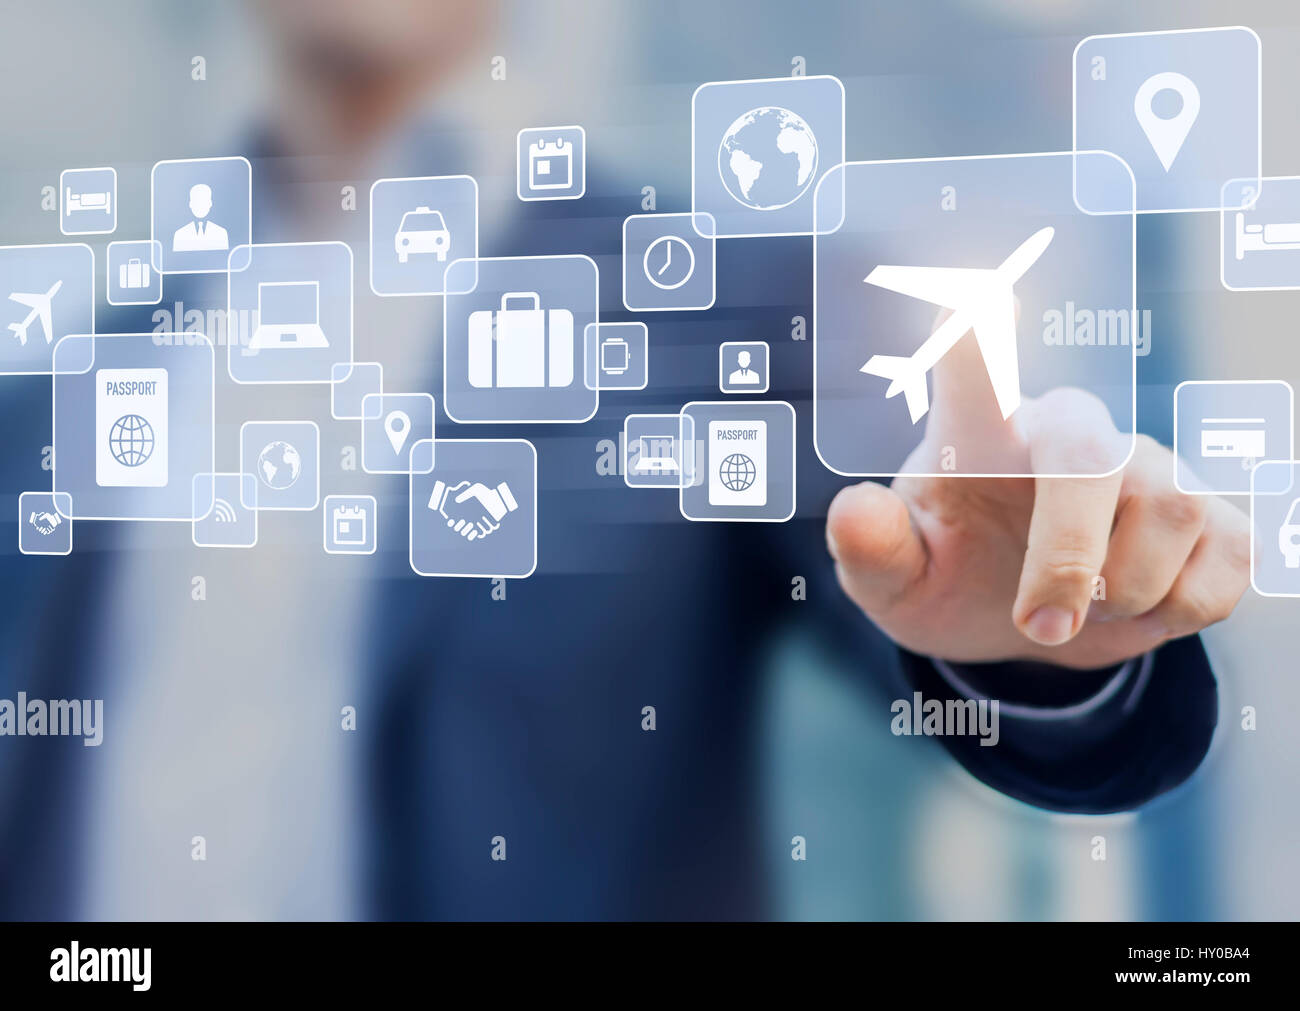 Viaggio di lavoro concetto con un imprenditore di toccare un pulsante su schermo con le icone sulla pianificazione del viaggio, trasporto, hotel, volo e passaporto Foto Stock